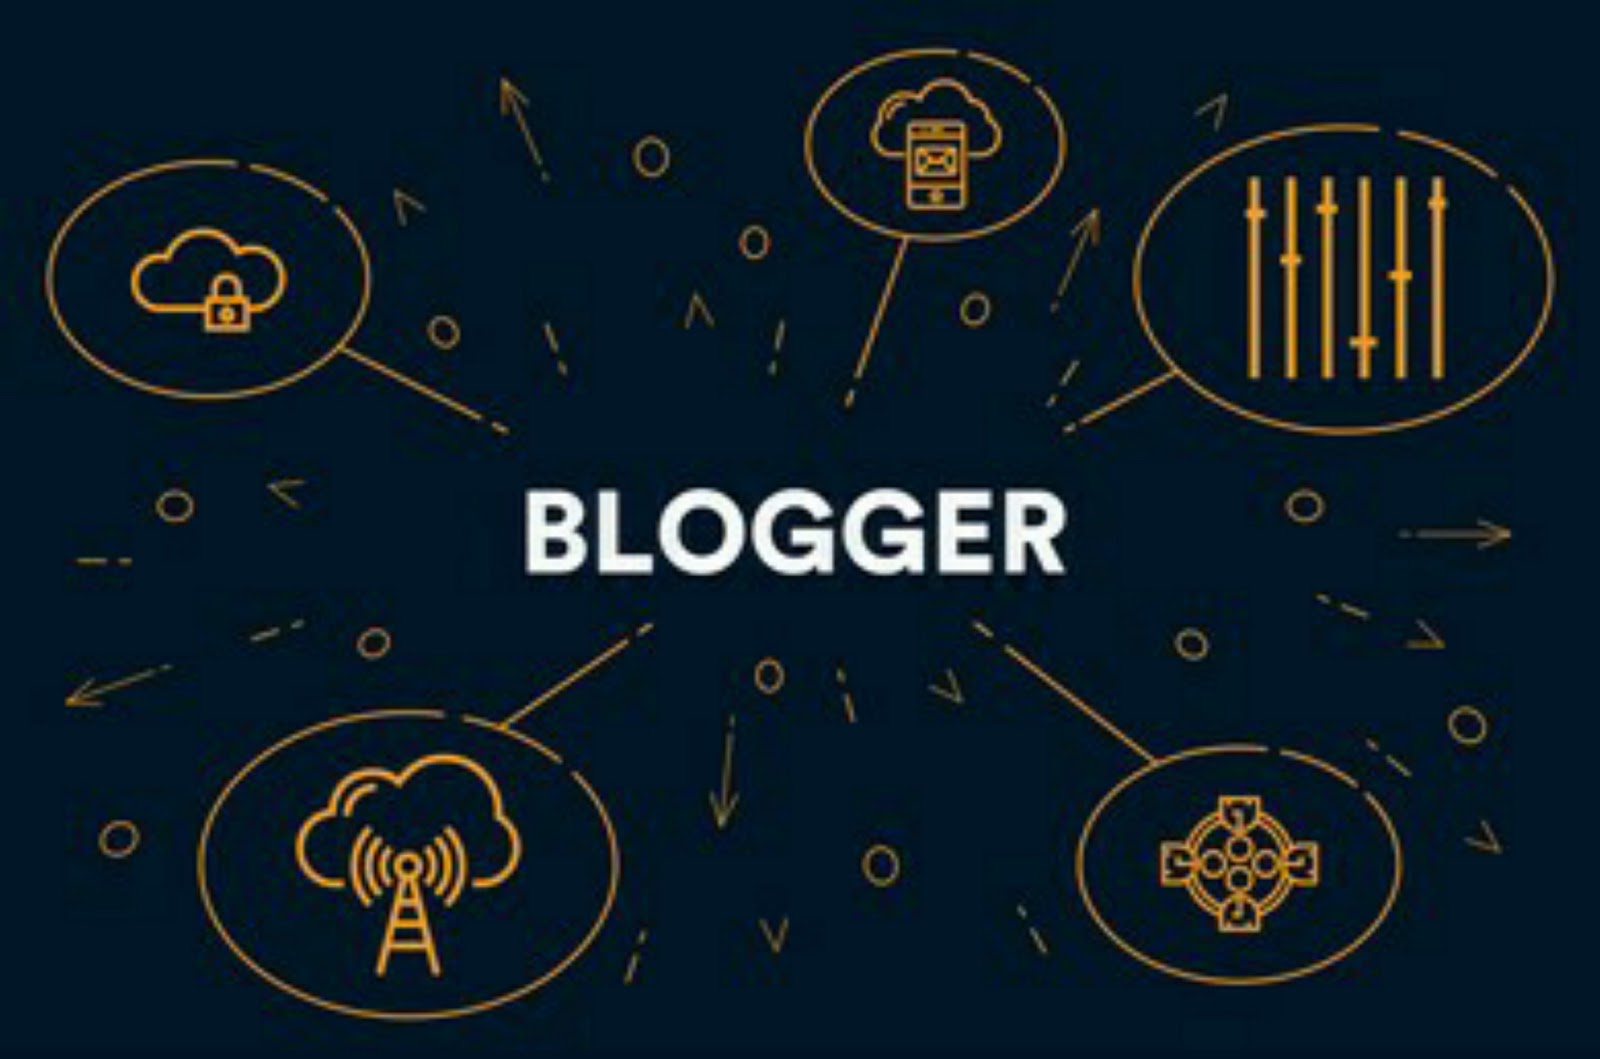 Cara Terbaru Membuat Blog di Blogger Lewat HP Android - Mudah dan